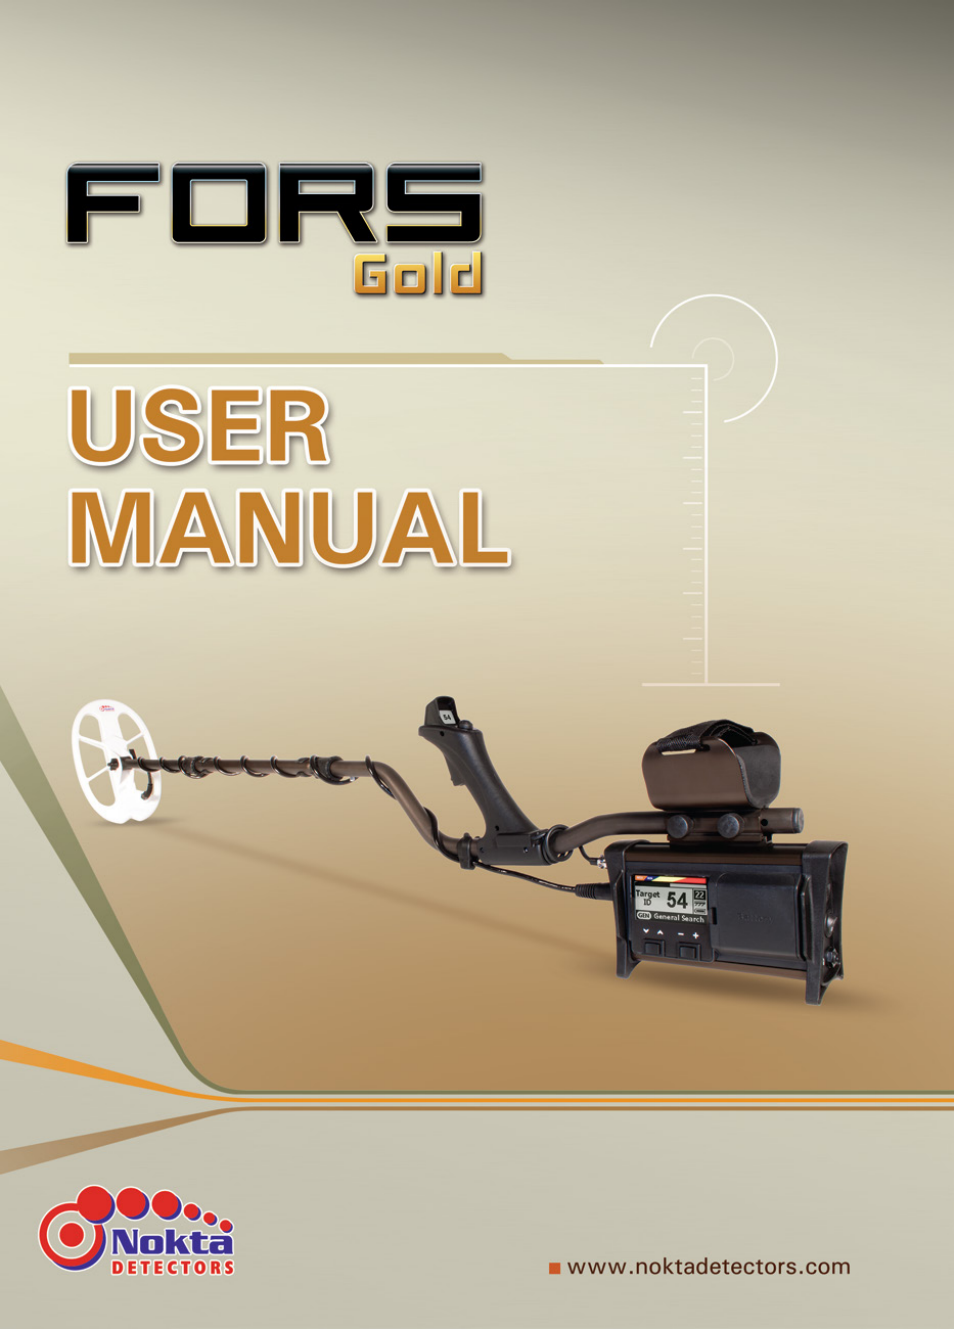 Nokta detectors Fors Gold User Manual | 33 pages